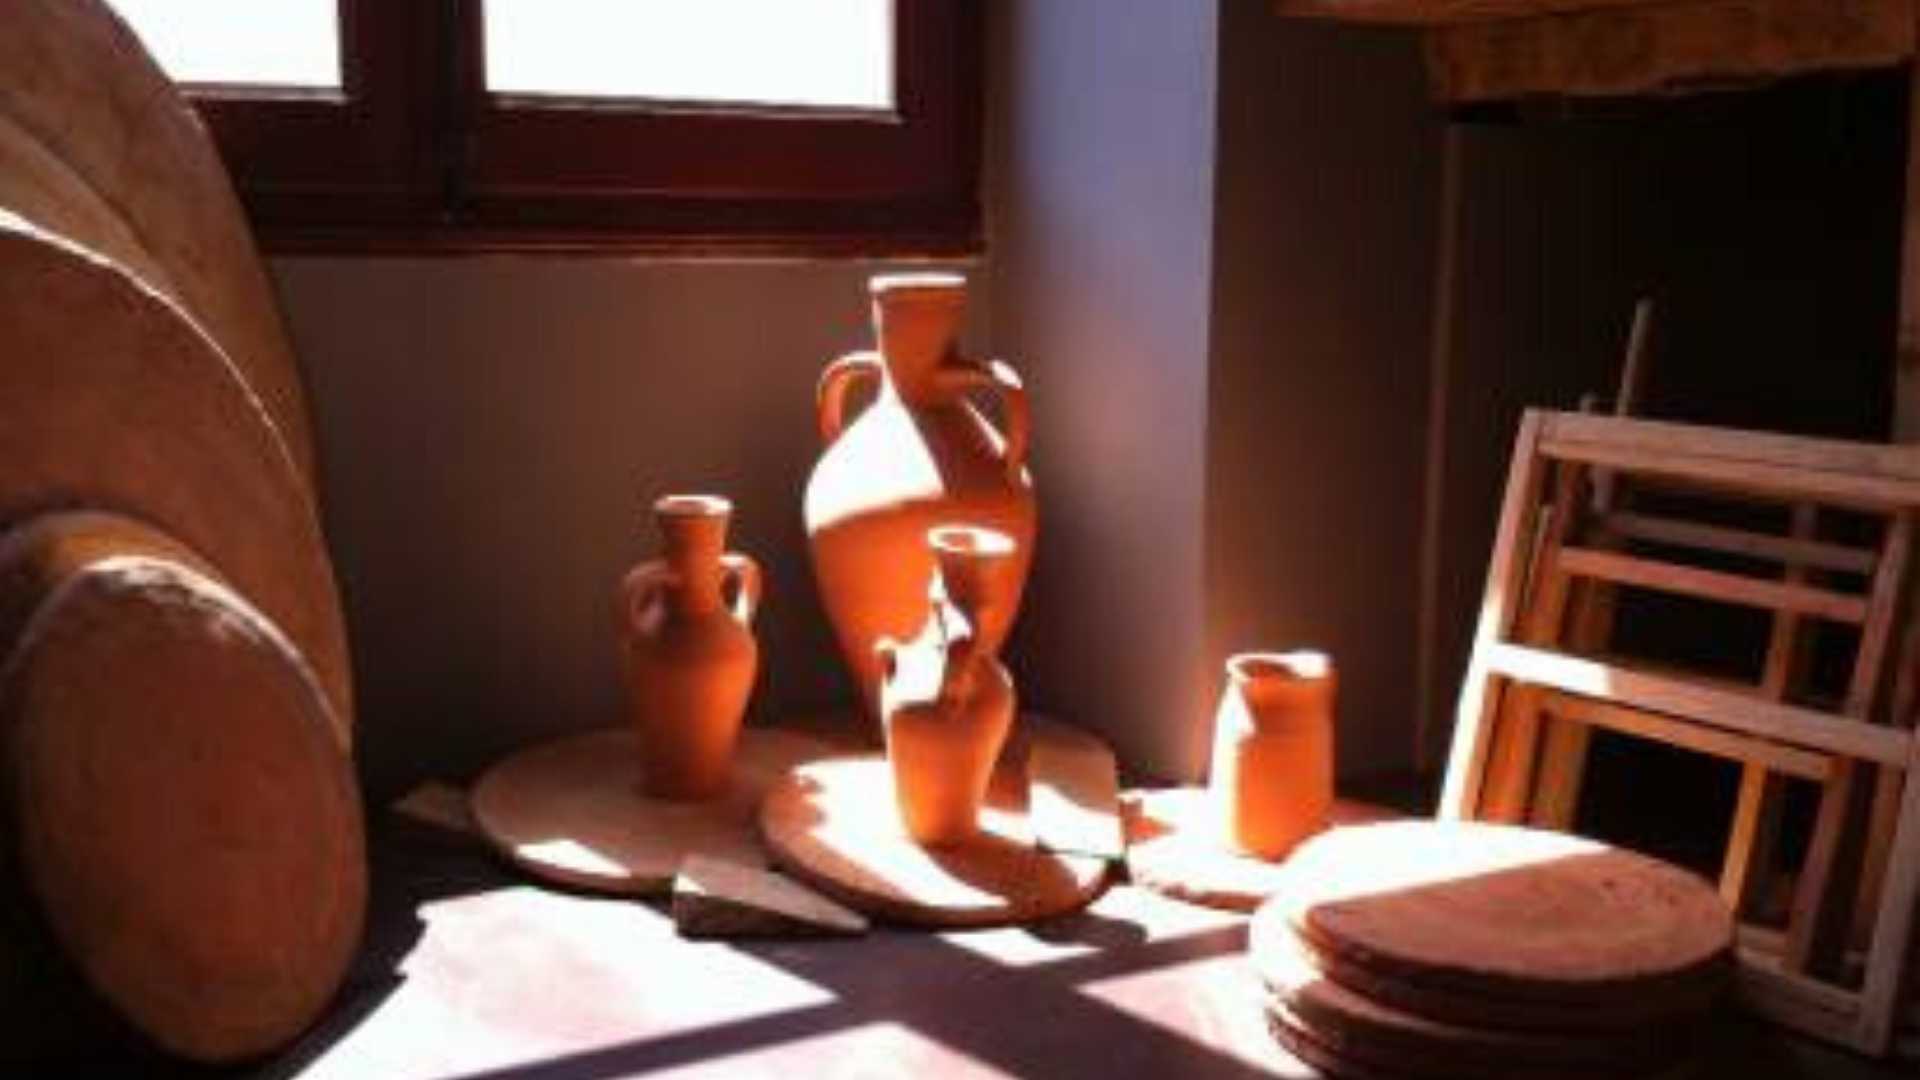 Visit the Ceramic Museum of l'Alcora